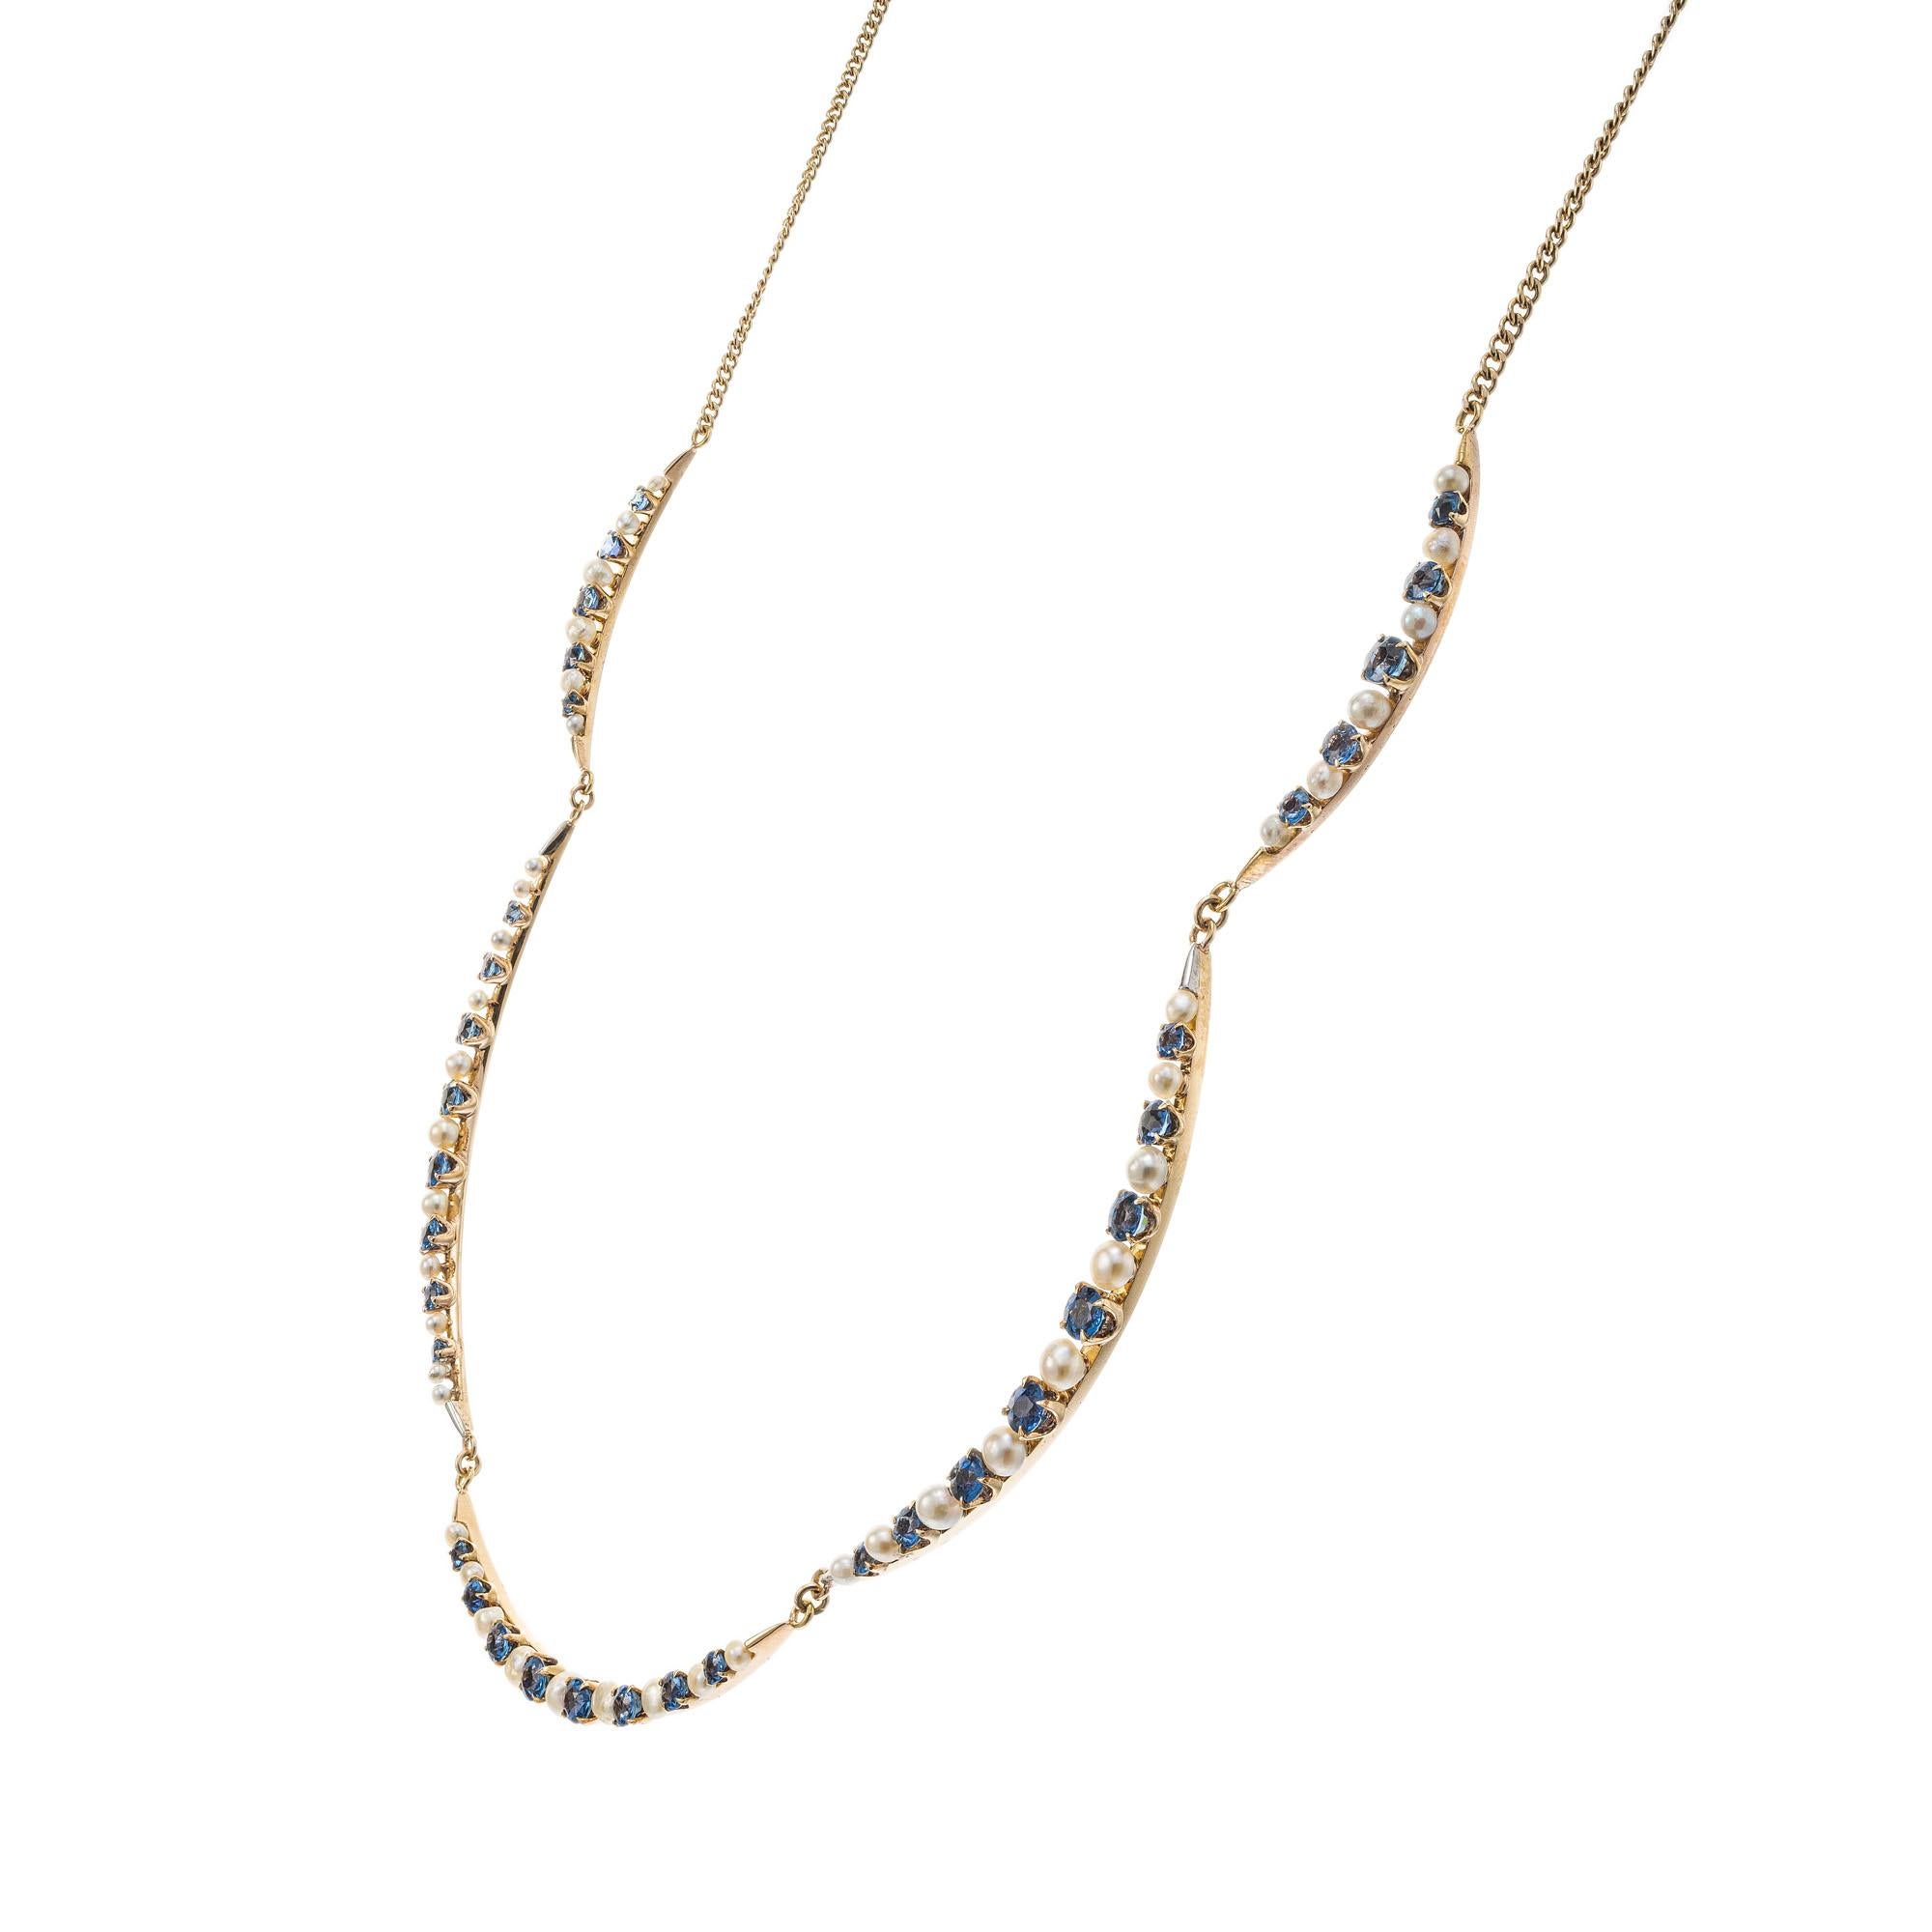 Vintage-Halskette aus den 1920er Jahren mit Saphiren und Perlen. Abgestufte halbmondförmige Abschnitte, besetzt mit 4,25 Karat natürlichen, unbehandelten blauen Saphiren aus Yogo Gulch Montana, stichprobenartig geprüft und vom GIA zertifiziert. Auch